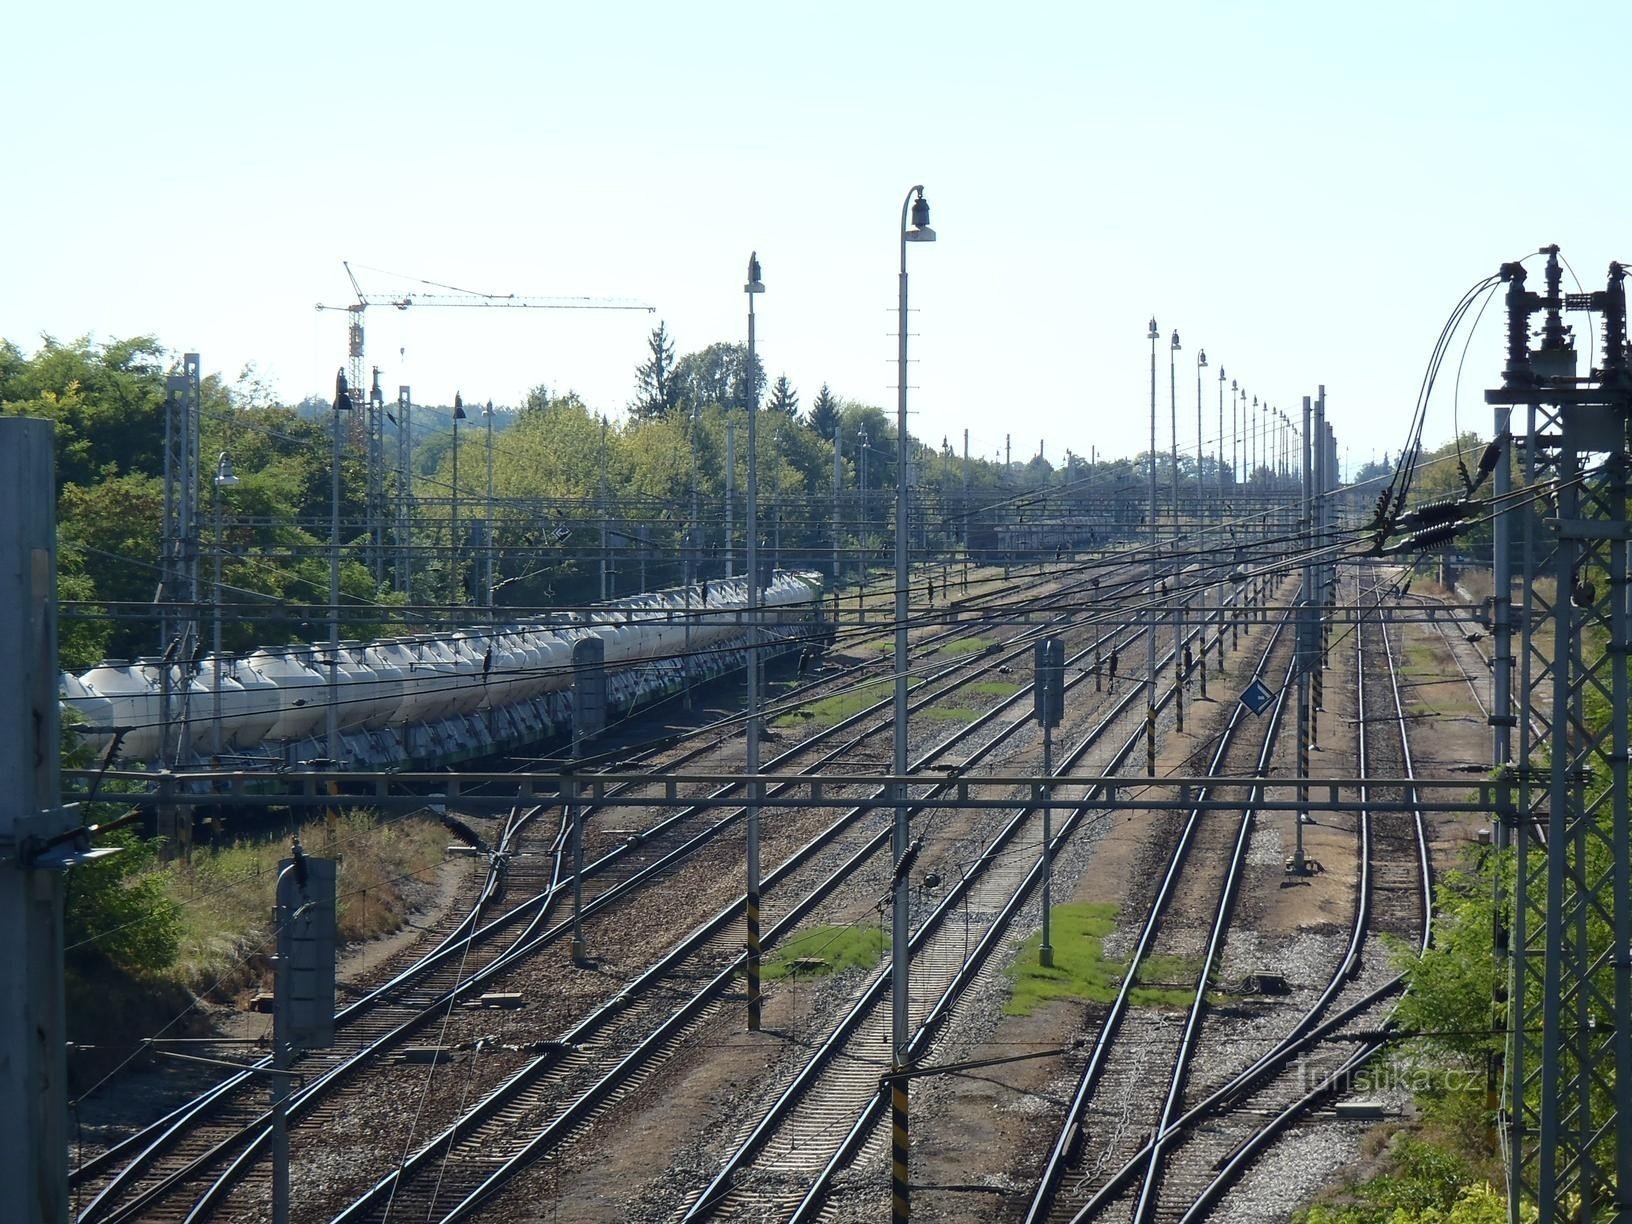 Calea ferată Blažovice - 11.9.2011